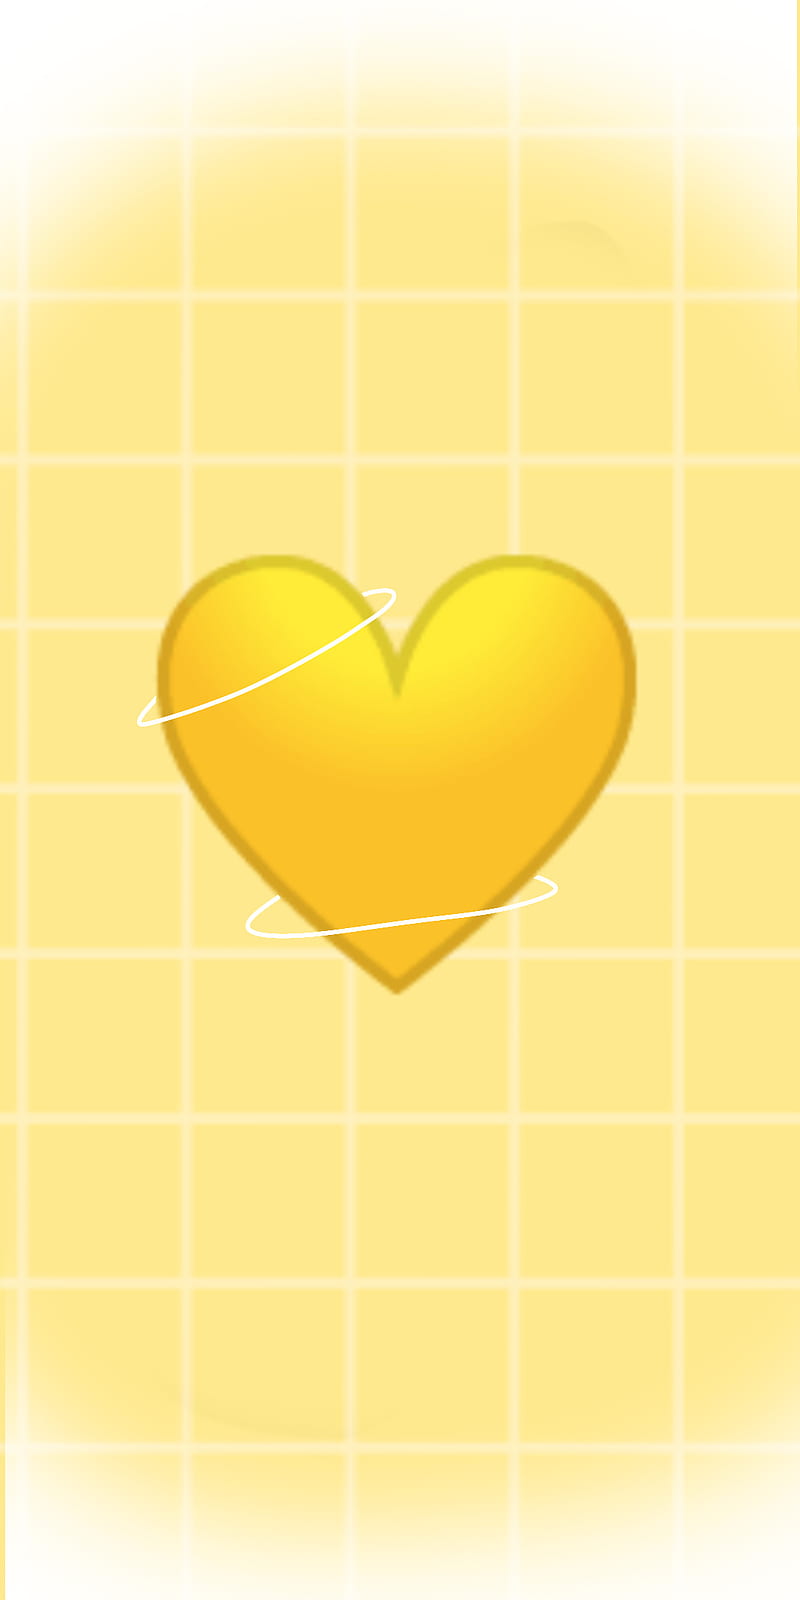 Download Love Emoji Hearts RoyaltyFree Stock Illustration Image  Pixabay